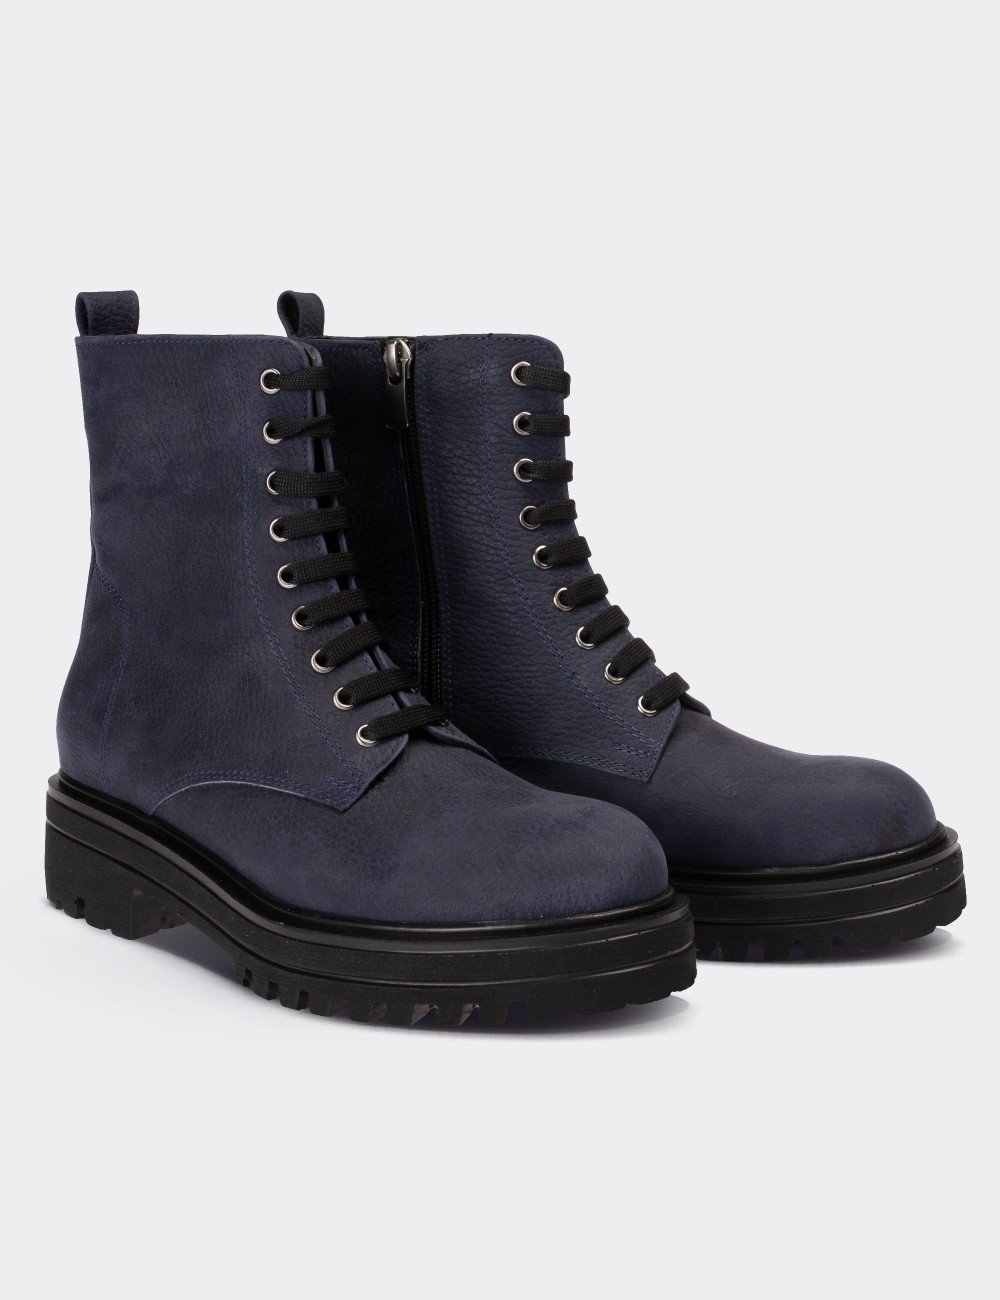 Navy Nubuck Leather Postal Boots - 01814ZMVIE01